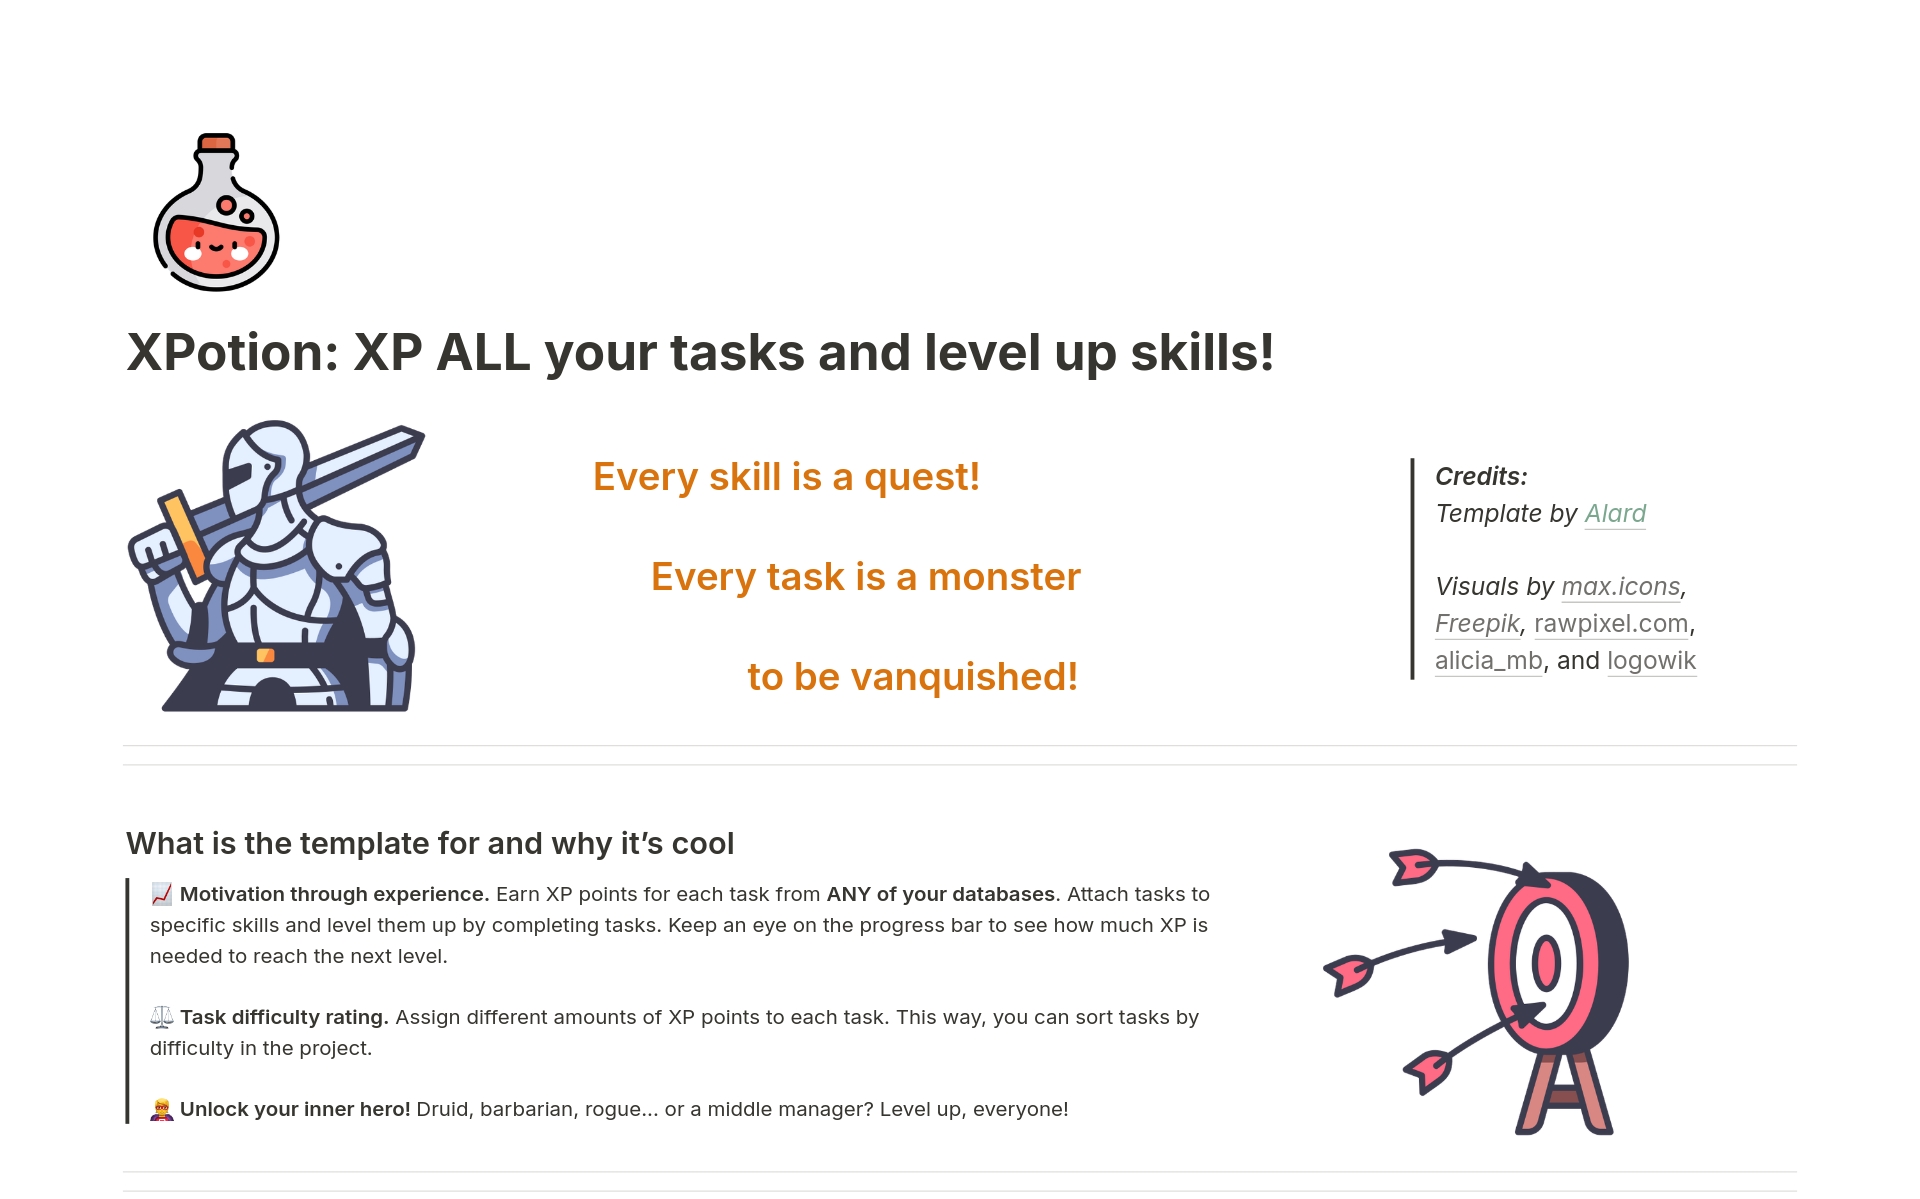 Aperçu du modèle de XPotion: XP ALL your tasks and level up skills